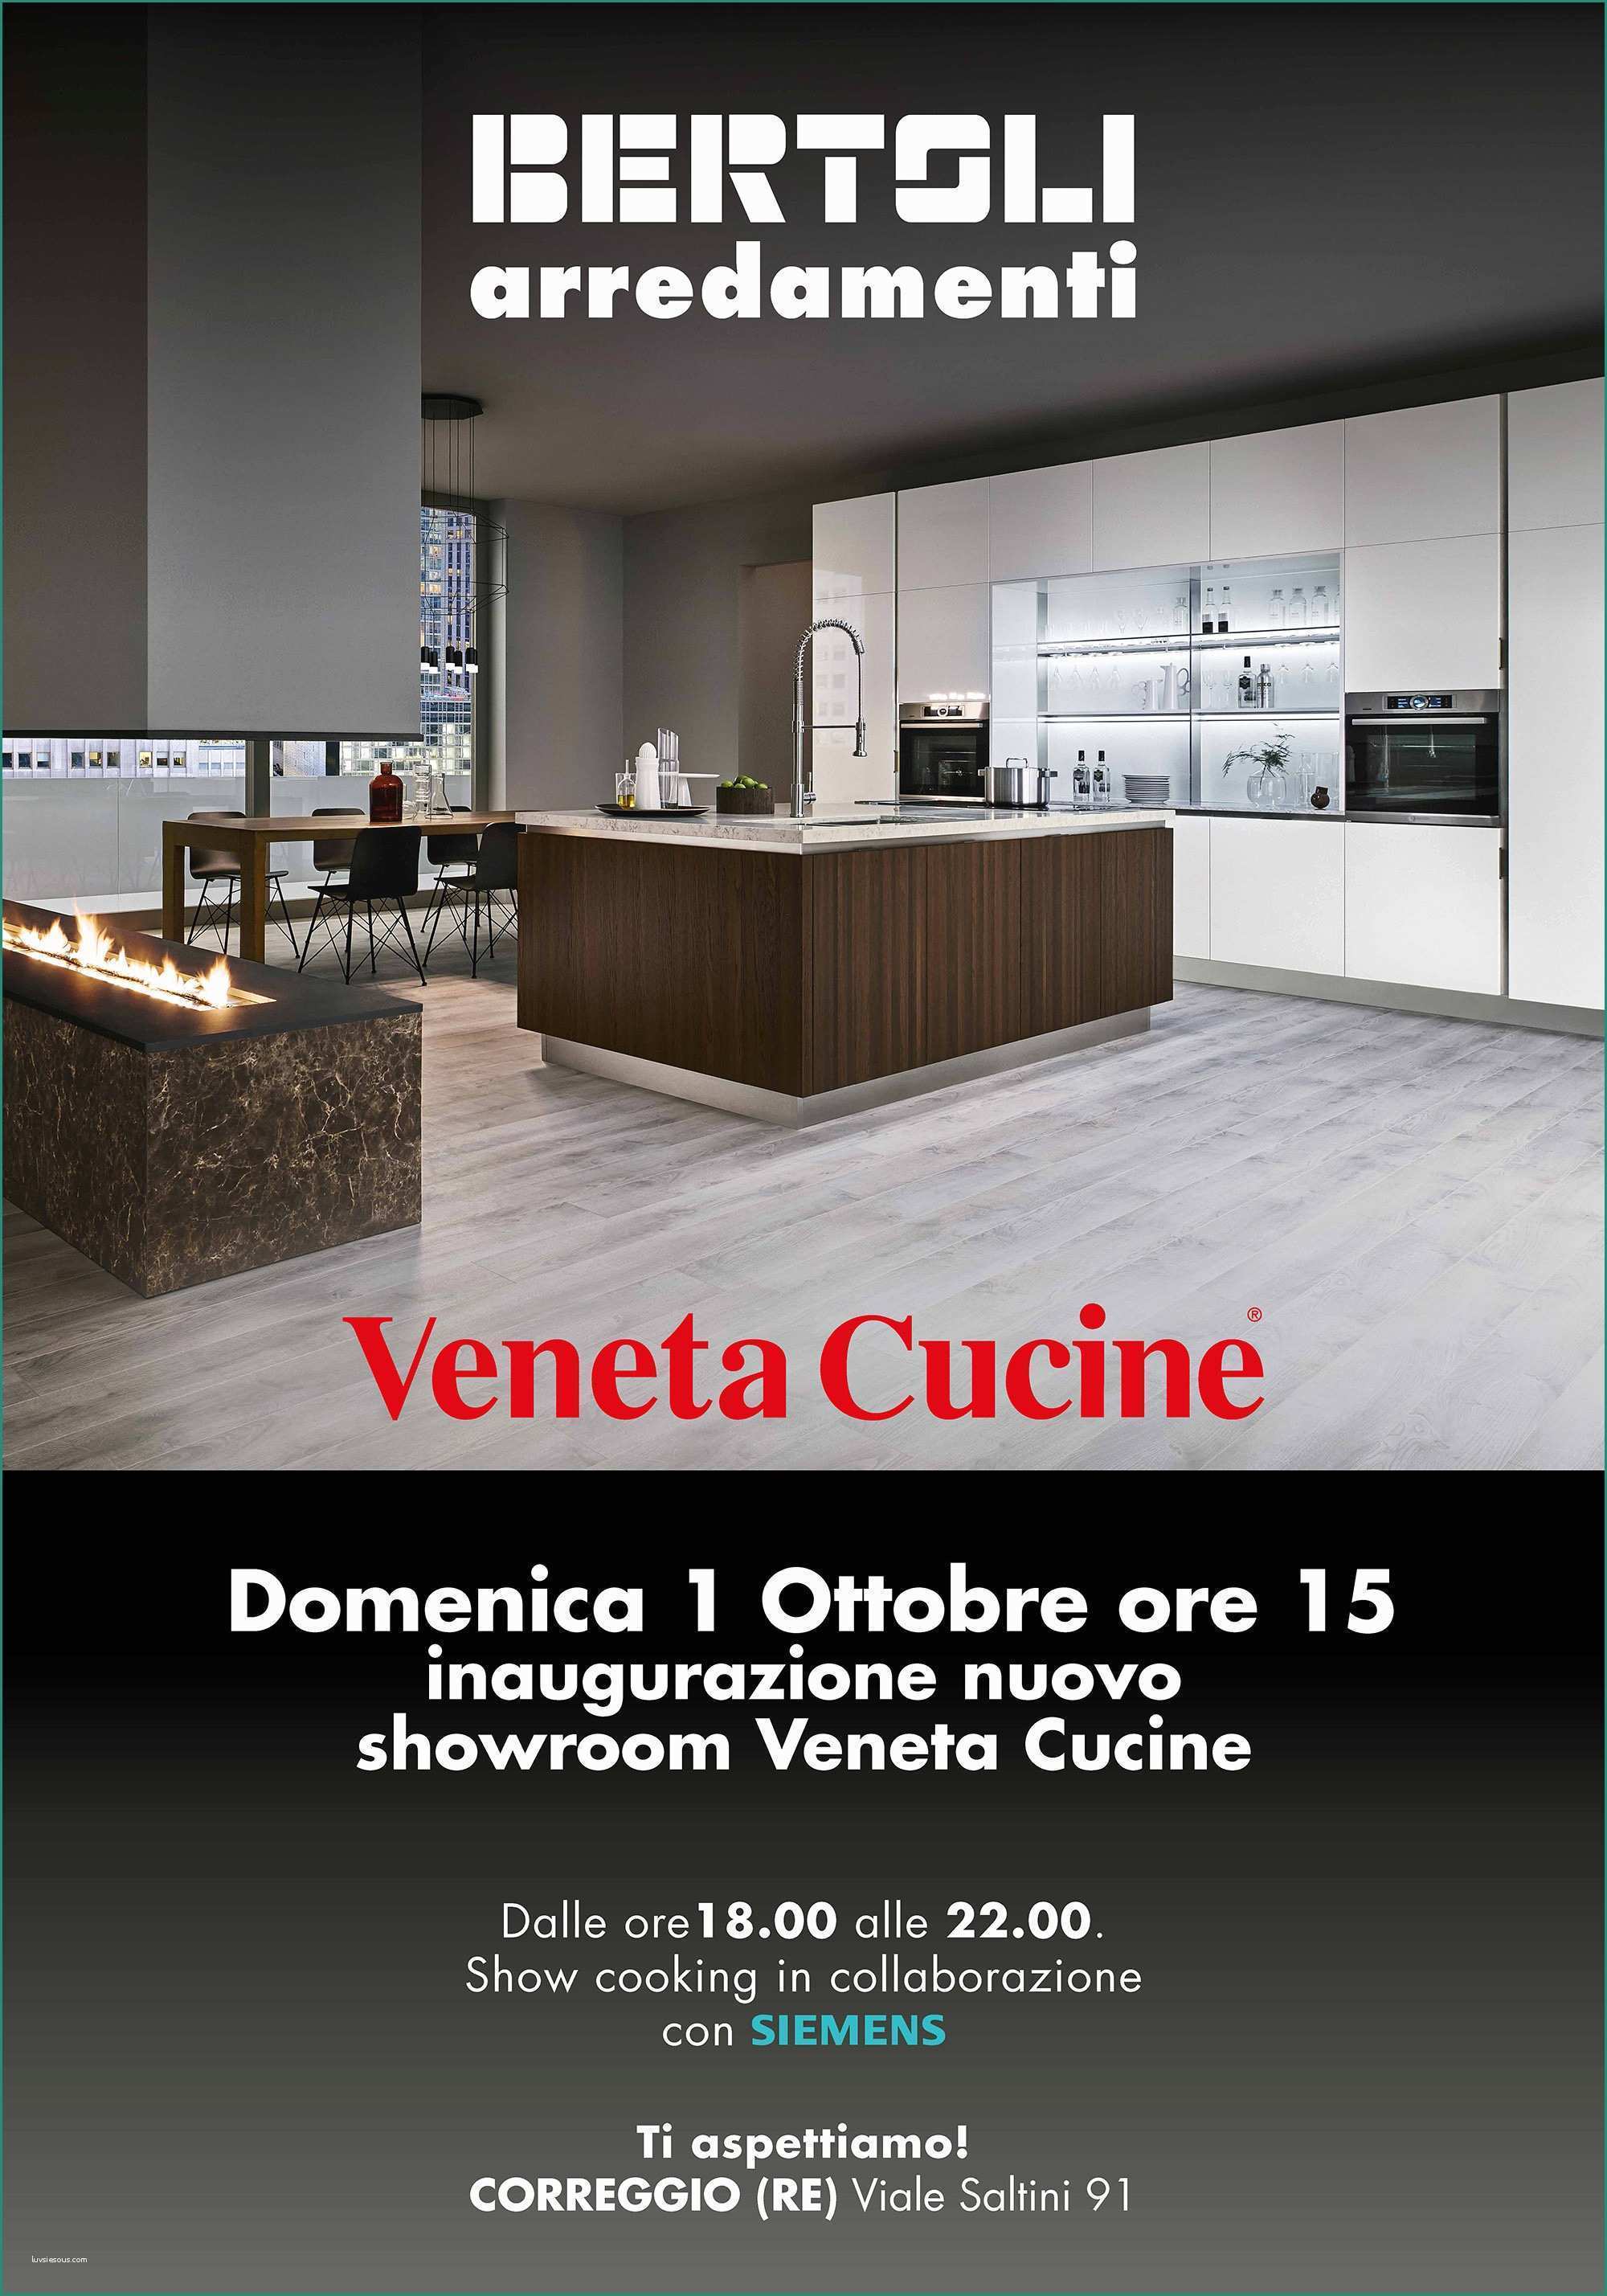 Veneta Cucine Firenze E Bertoli Arredamenti Inaugura Il Nuovo Showroom A Correggio